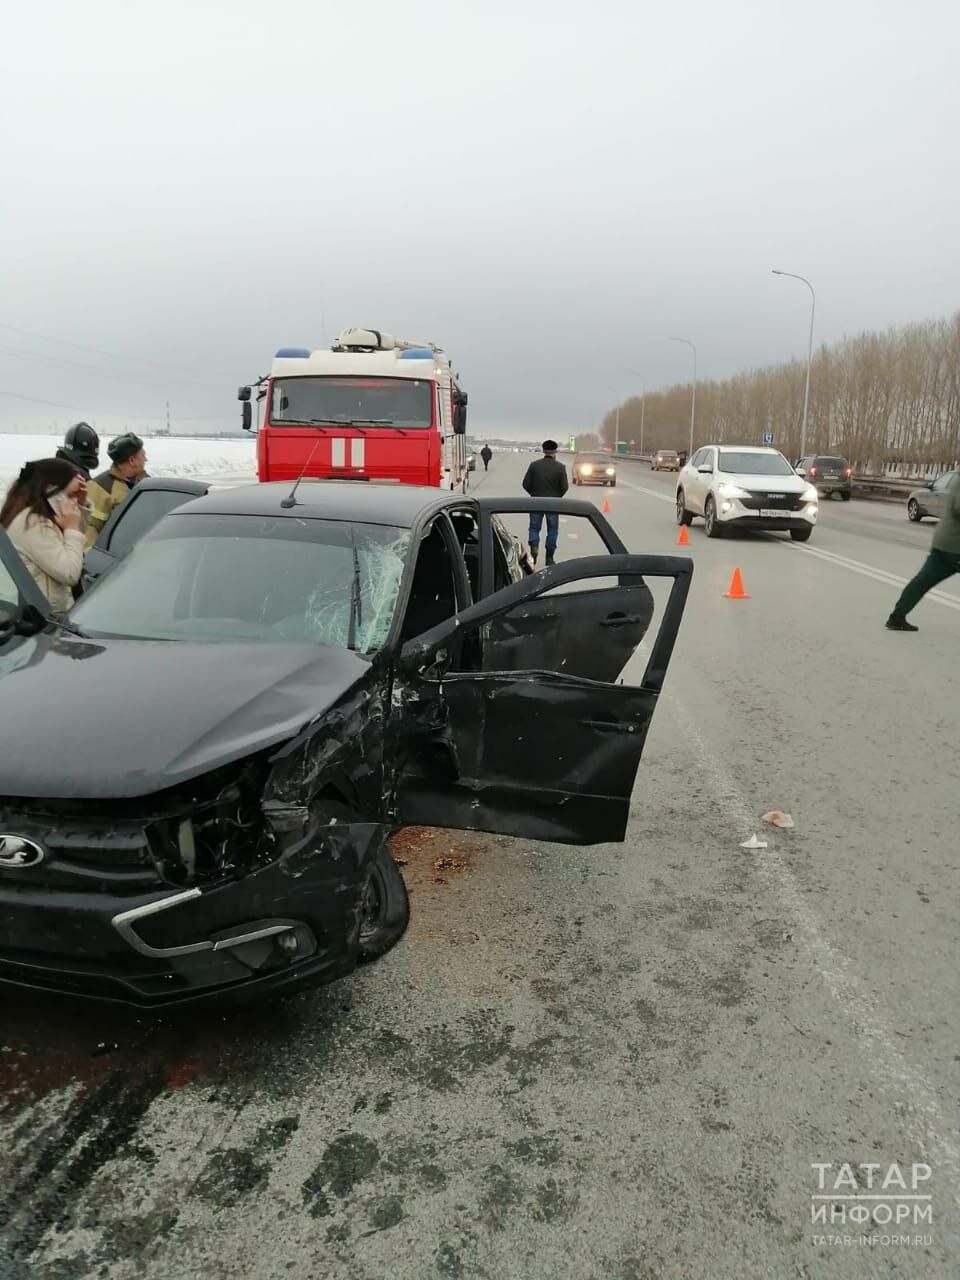 Пять человек пострадали в аварии с двумя легковушками в Татарстане